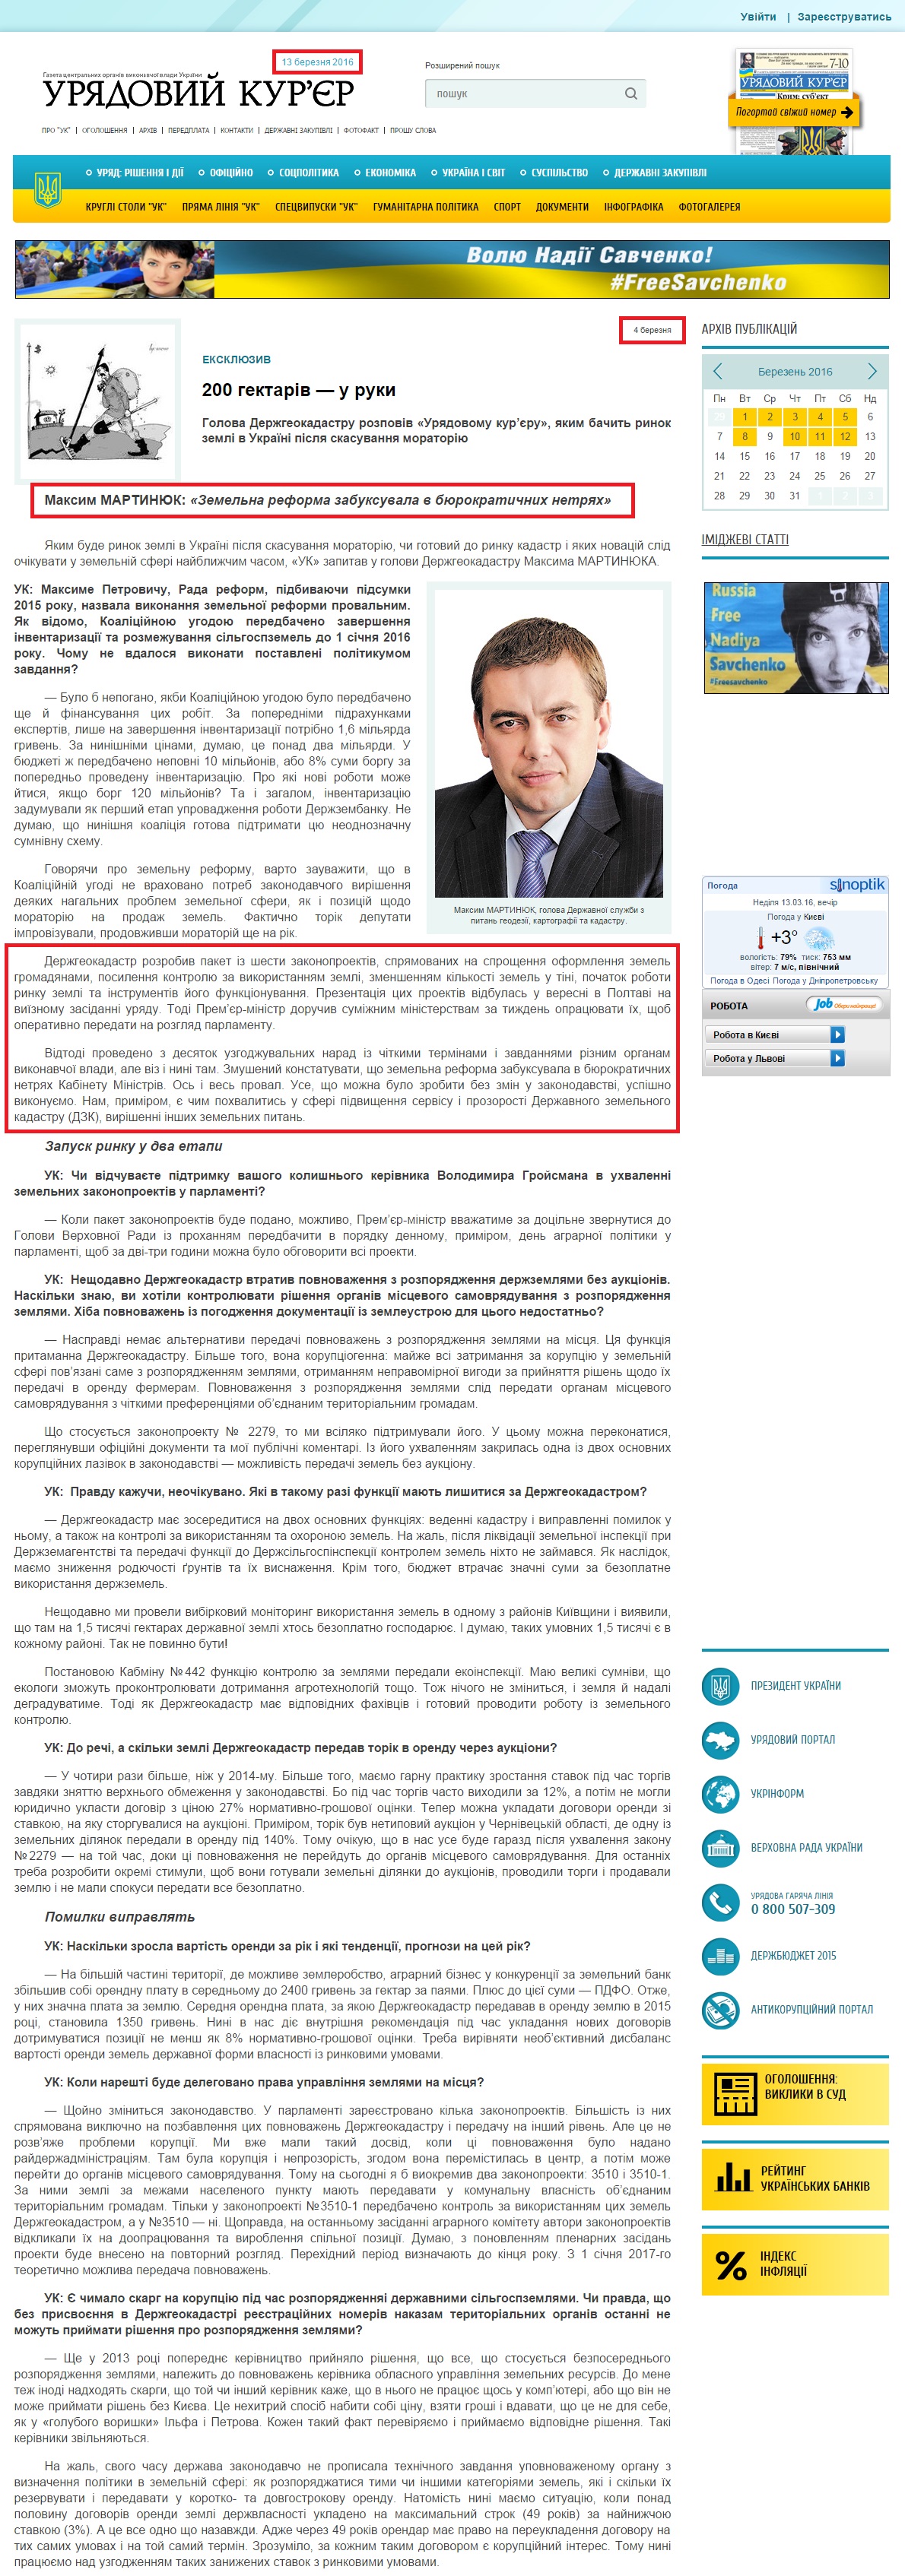 http://ukurier.gov.ua/uk/articles/maksim-martinyuk-zemelna-reforma-zabuksuvala-v-byu/